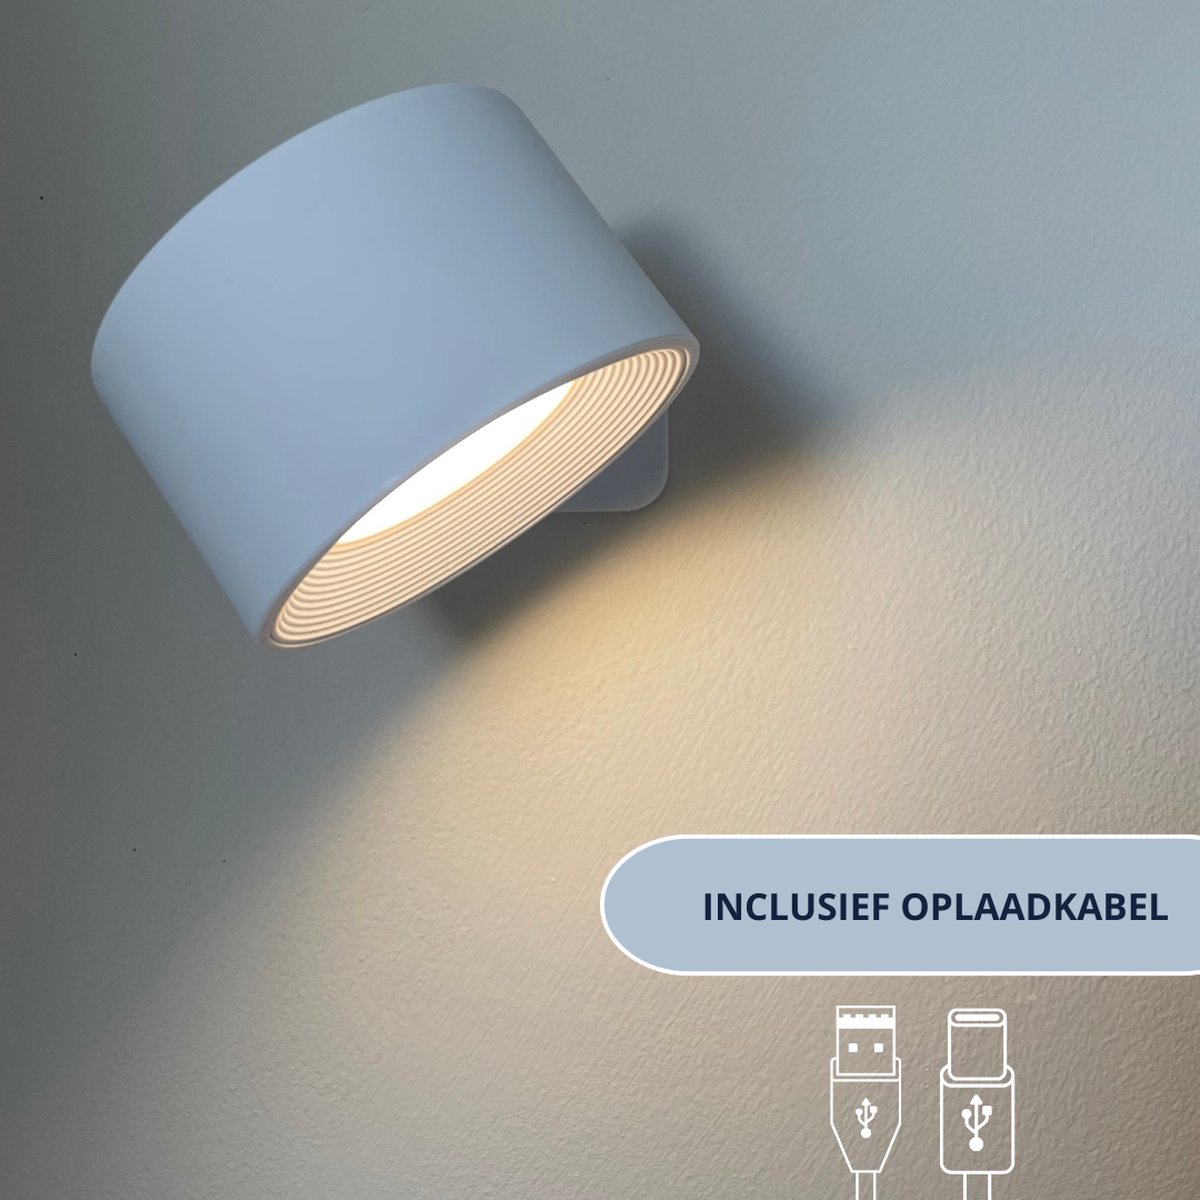 Latium Oplaadbare LED Wandlamp voor Binnen - USB Oplaadbaar - Draadloos - Batterij - Dimbaar - Nachtlampje - Slaapkamer - Woonkamer - Touch Control - 360º rotatie - Wit